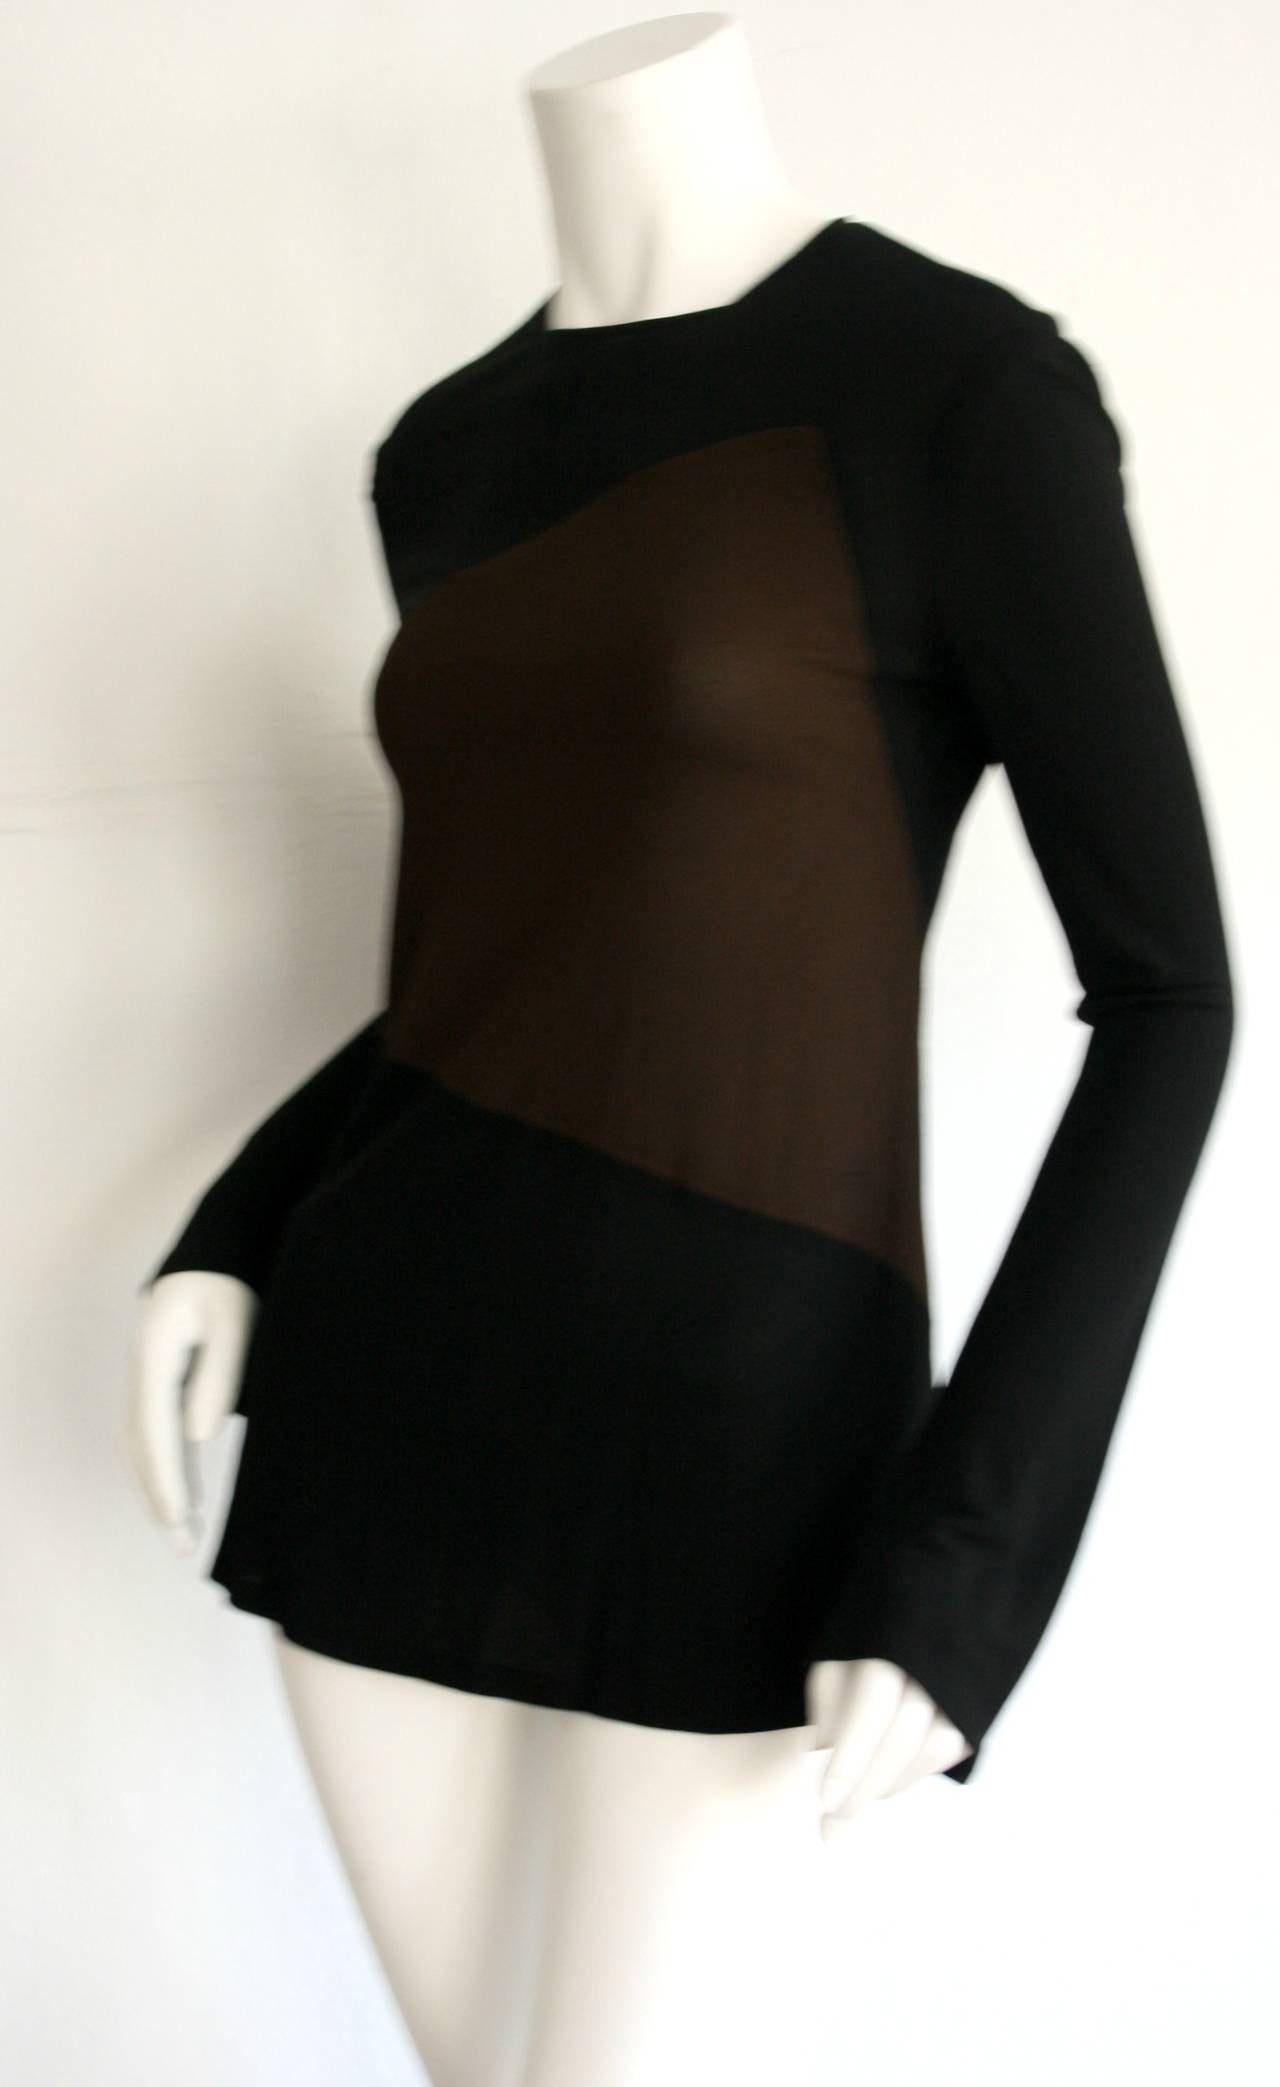 Magnifique blouse vintage en soie noire et marron chocolat de Calvin Klein Collection ! Merveilleux imprimé géométrique. Manches légèrement évasées, coupe moulante et fermeture éclair cachée dans le haut du dos. En très bon état. Taille marquée US